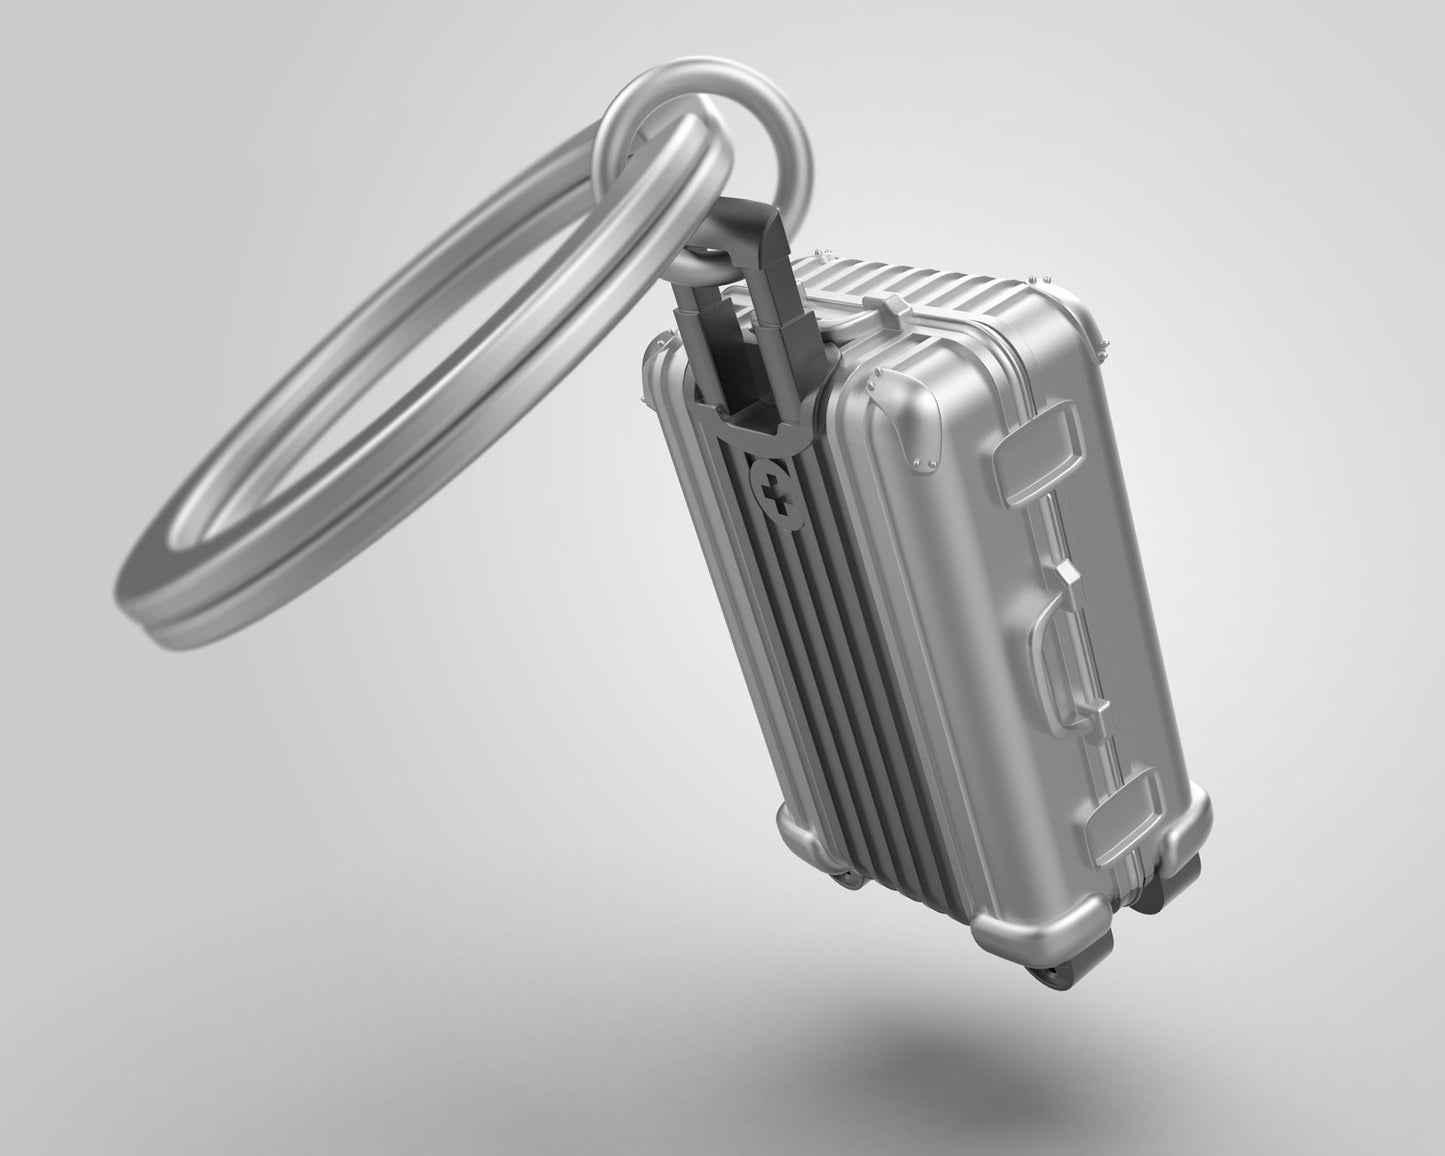 Suitcase key ring